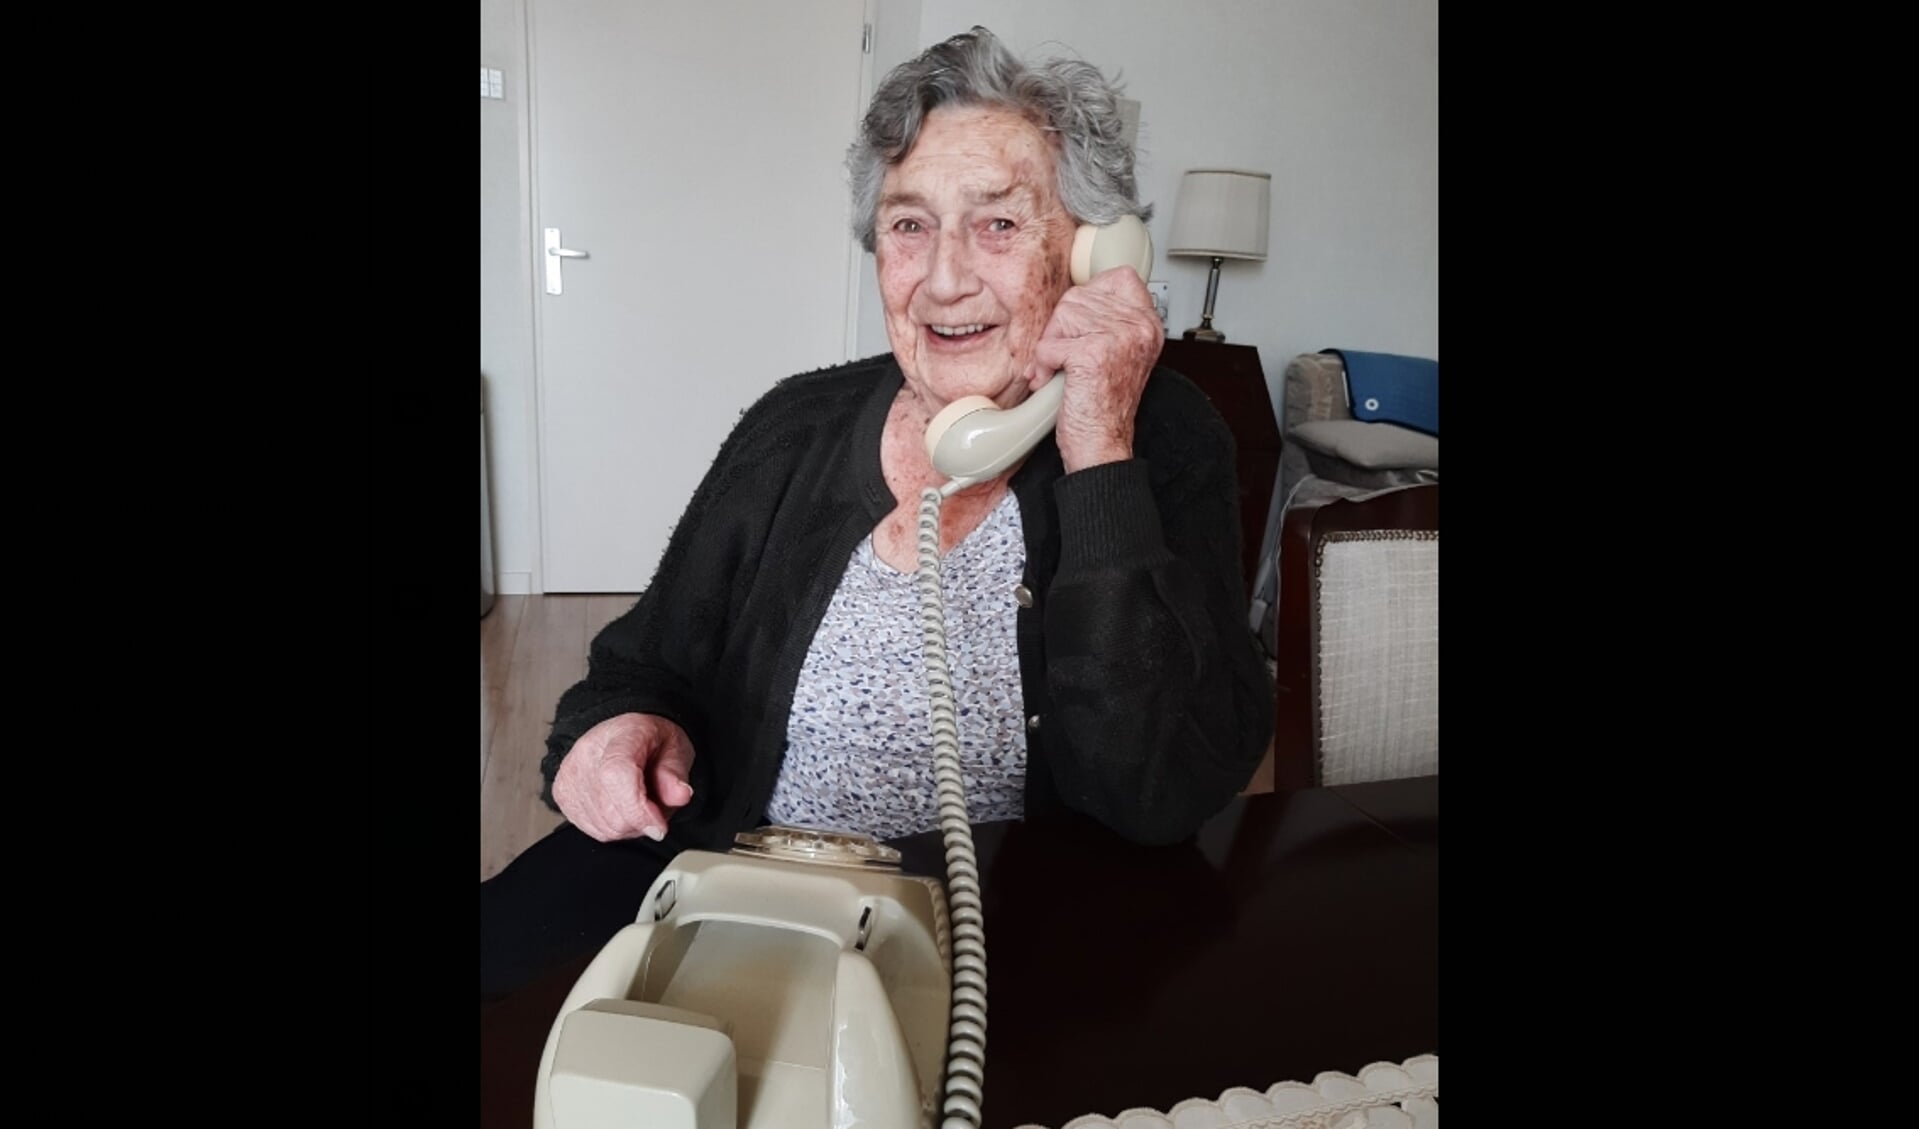 De moeder van Birgitte is zo blij met de Wonderfoon, ze geniet er elke dag van.